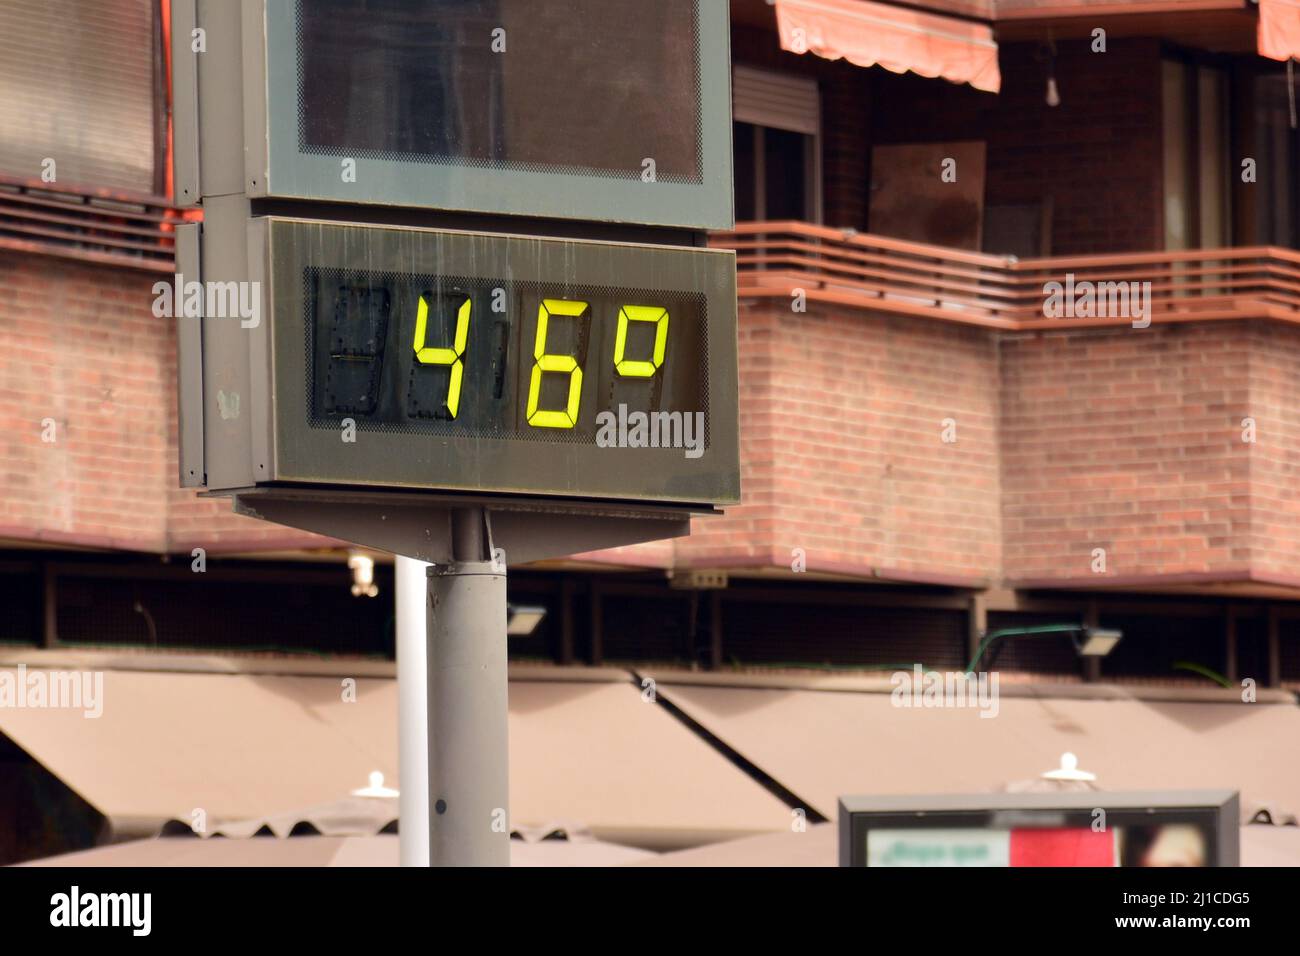 Termómetro callejero en una calle marcando 44 gradi celsius Foto Stock